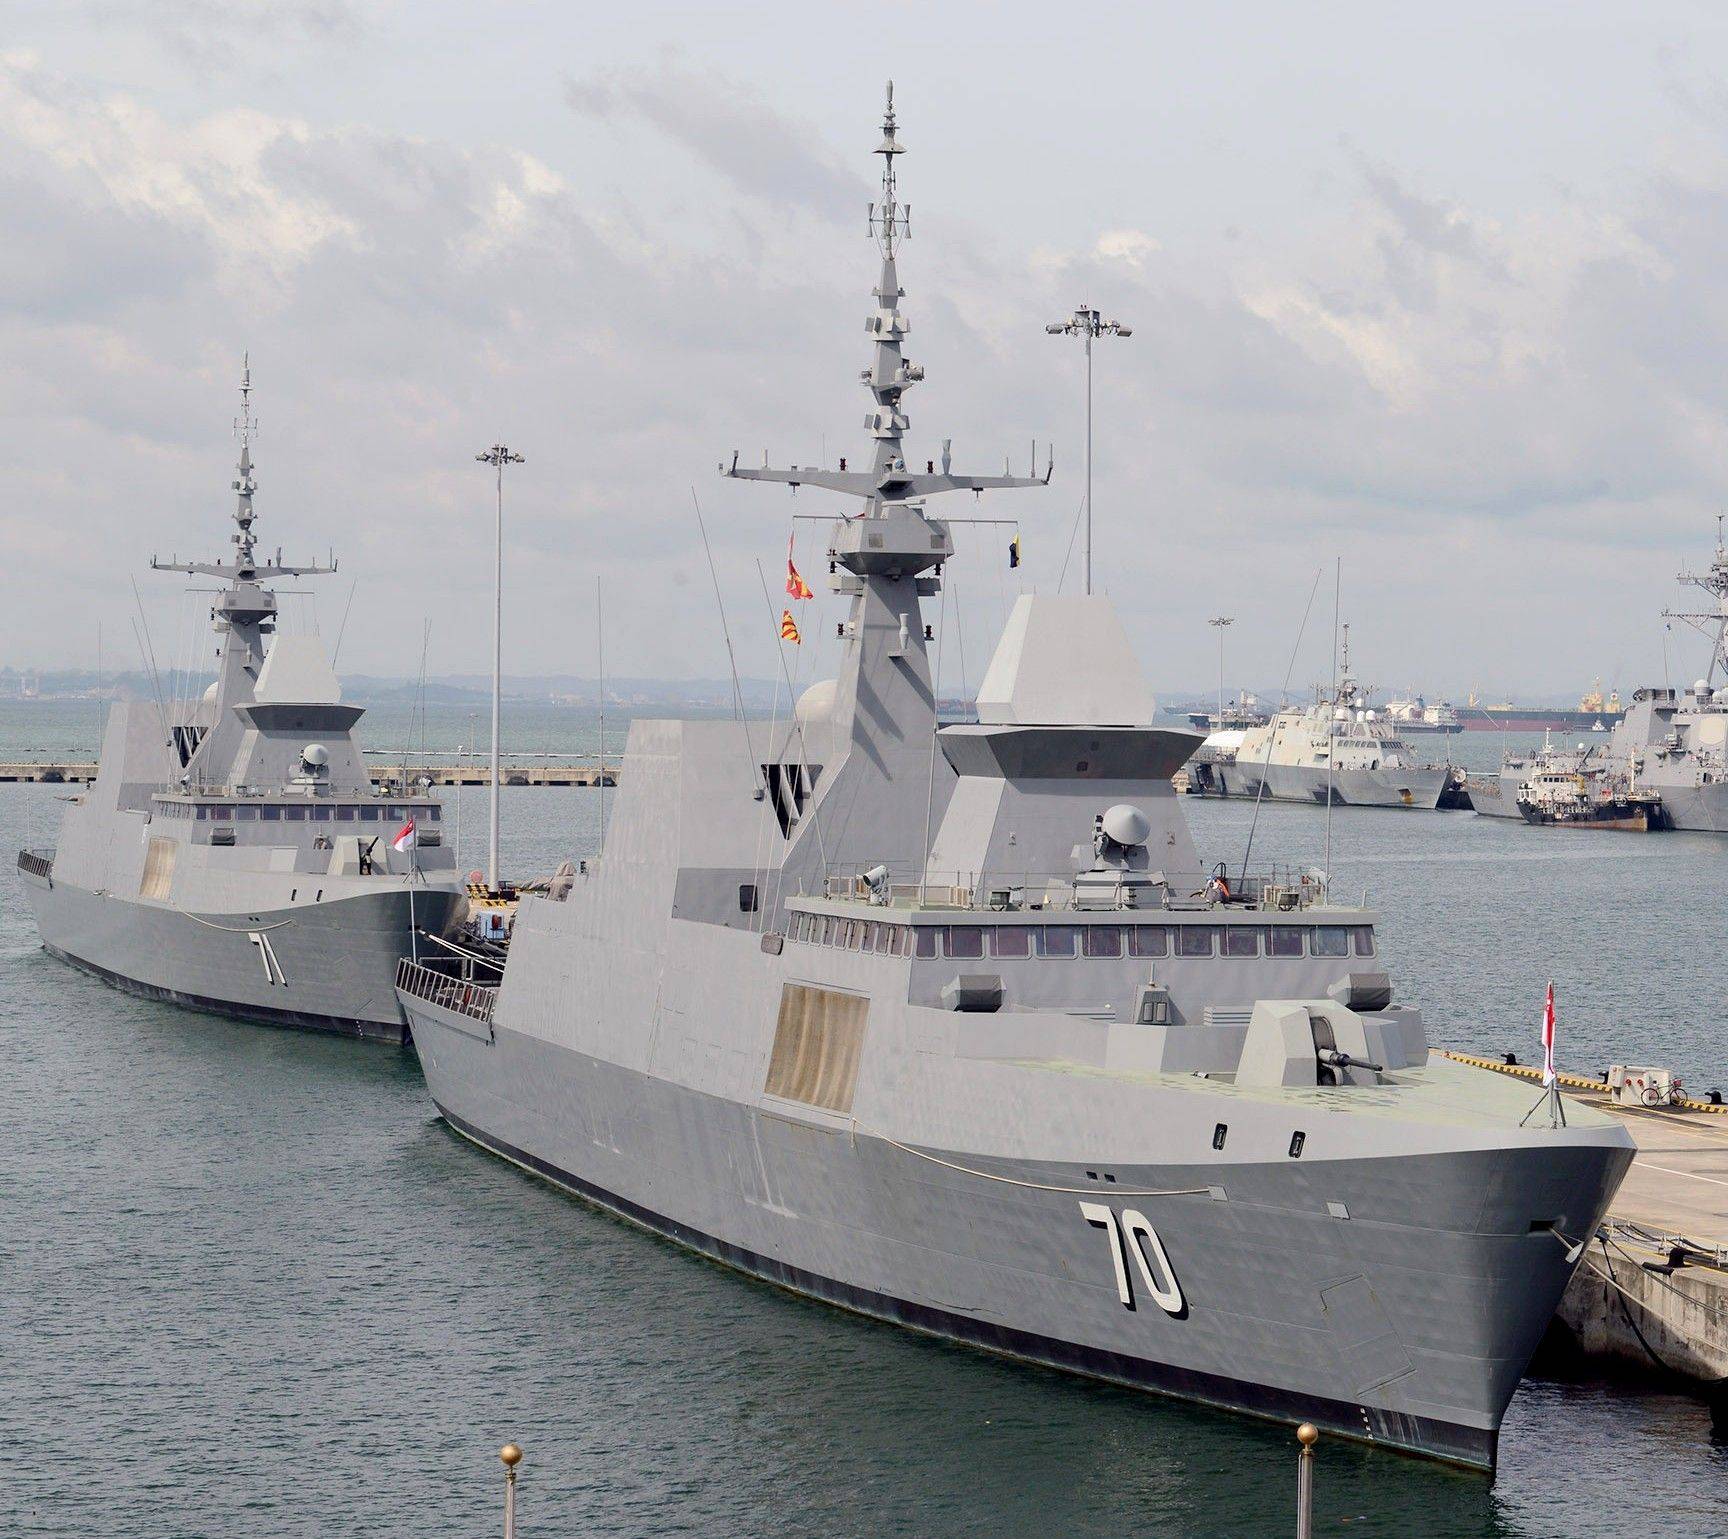 可畏级护卫舰,出自法国之手,成新加坡海军实力象征!